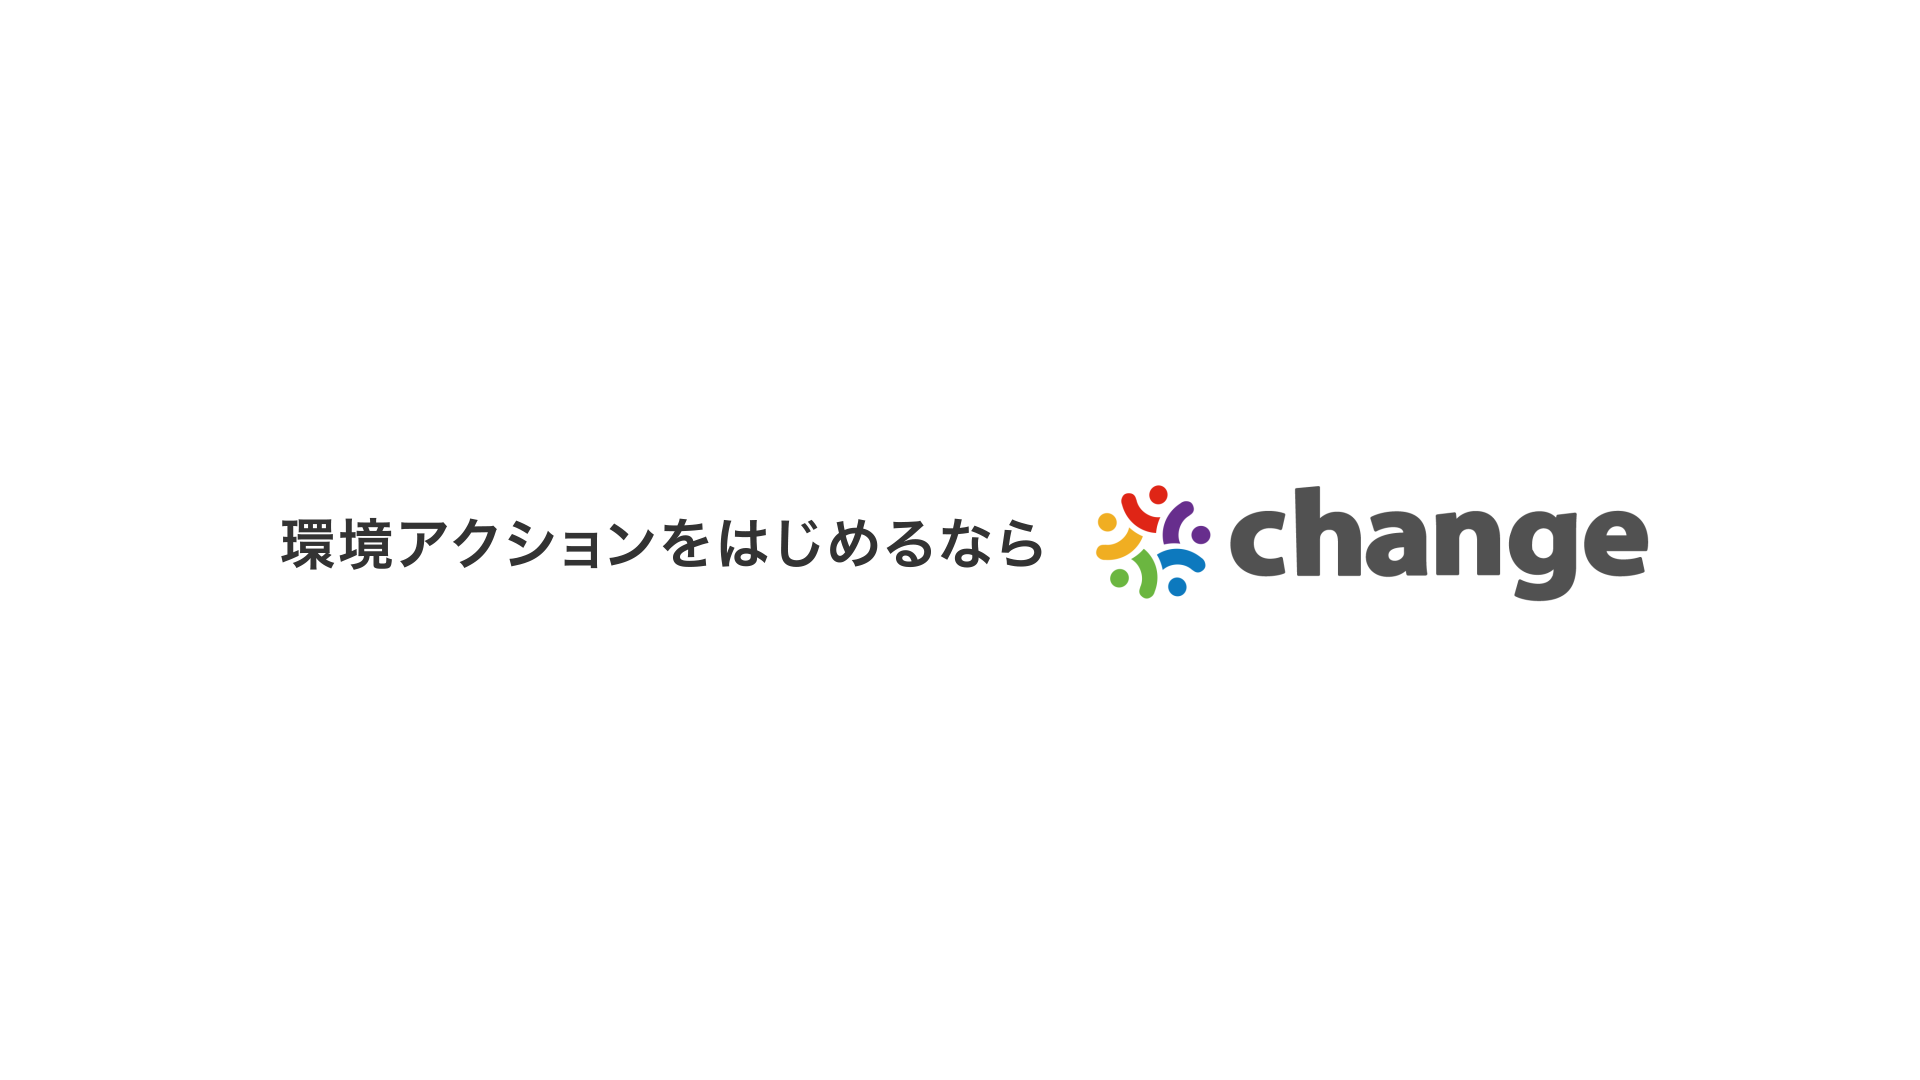 約1分で「change」ってなに？の疑問が解消！たくさんの”ひとり”の想いを環境貢献につなぐ日本初のサービス「change」のショートムービー公開